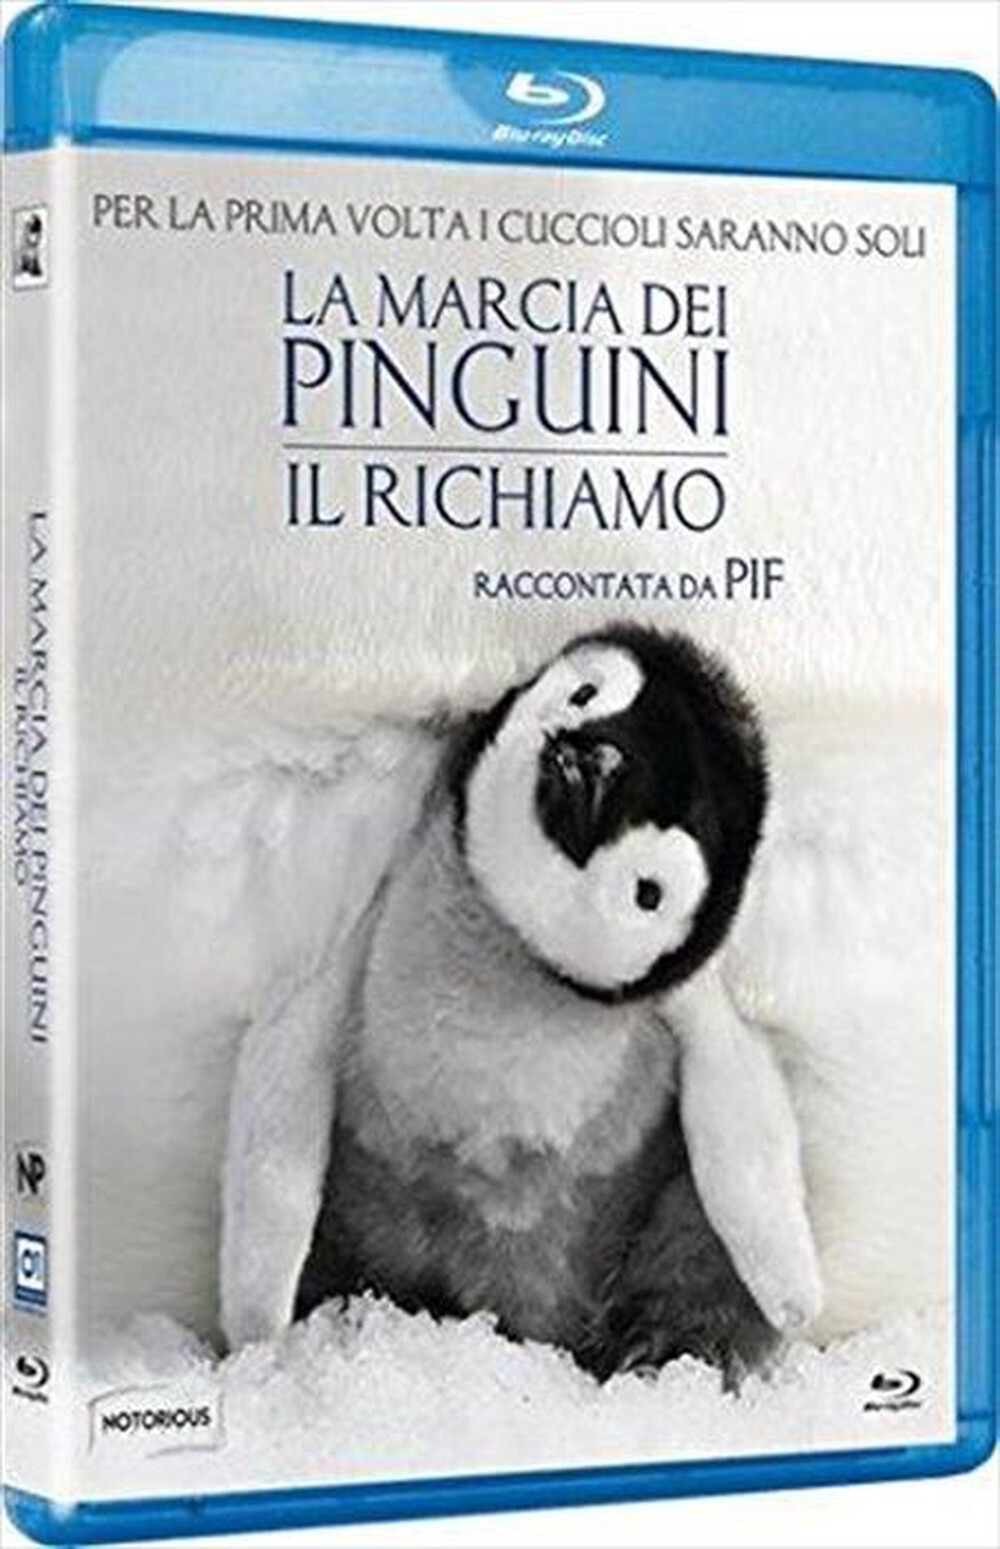 "EAGLE PICTURES - Marcia Dei Pinguini (La) - Il Richiamo"